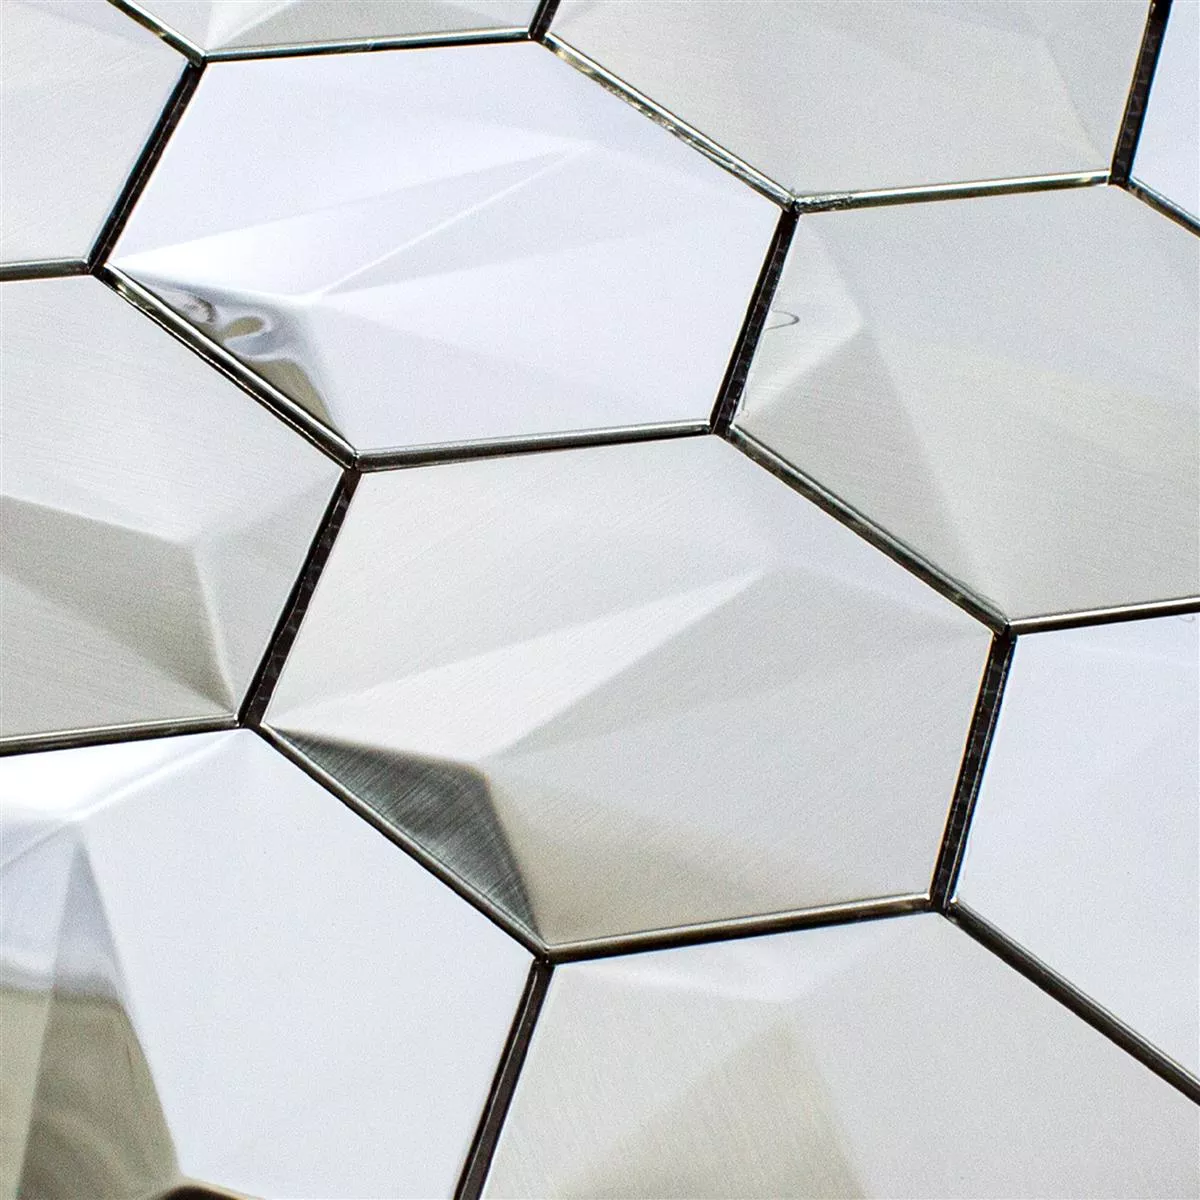 Edelstahl Mosaikfliesen Durango Hexagon 3D Silber